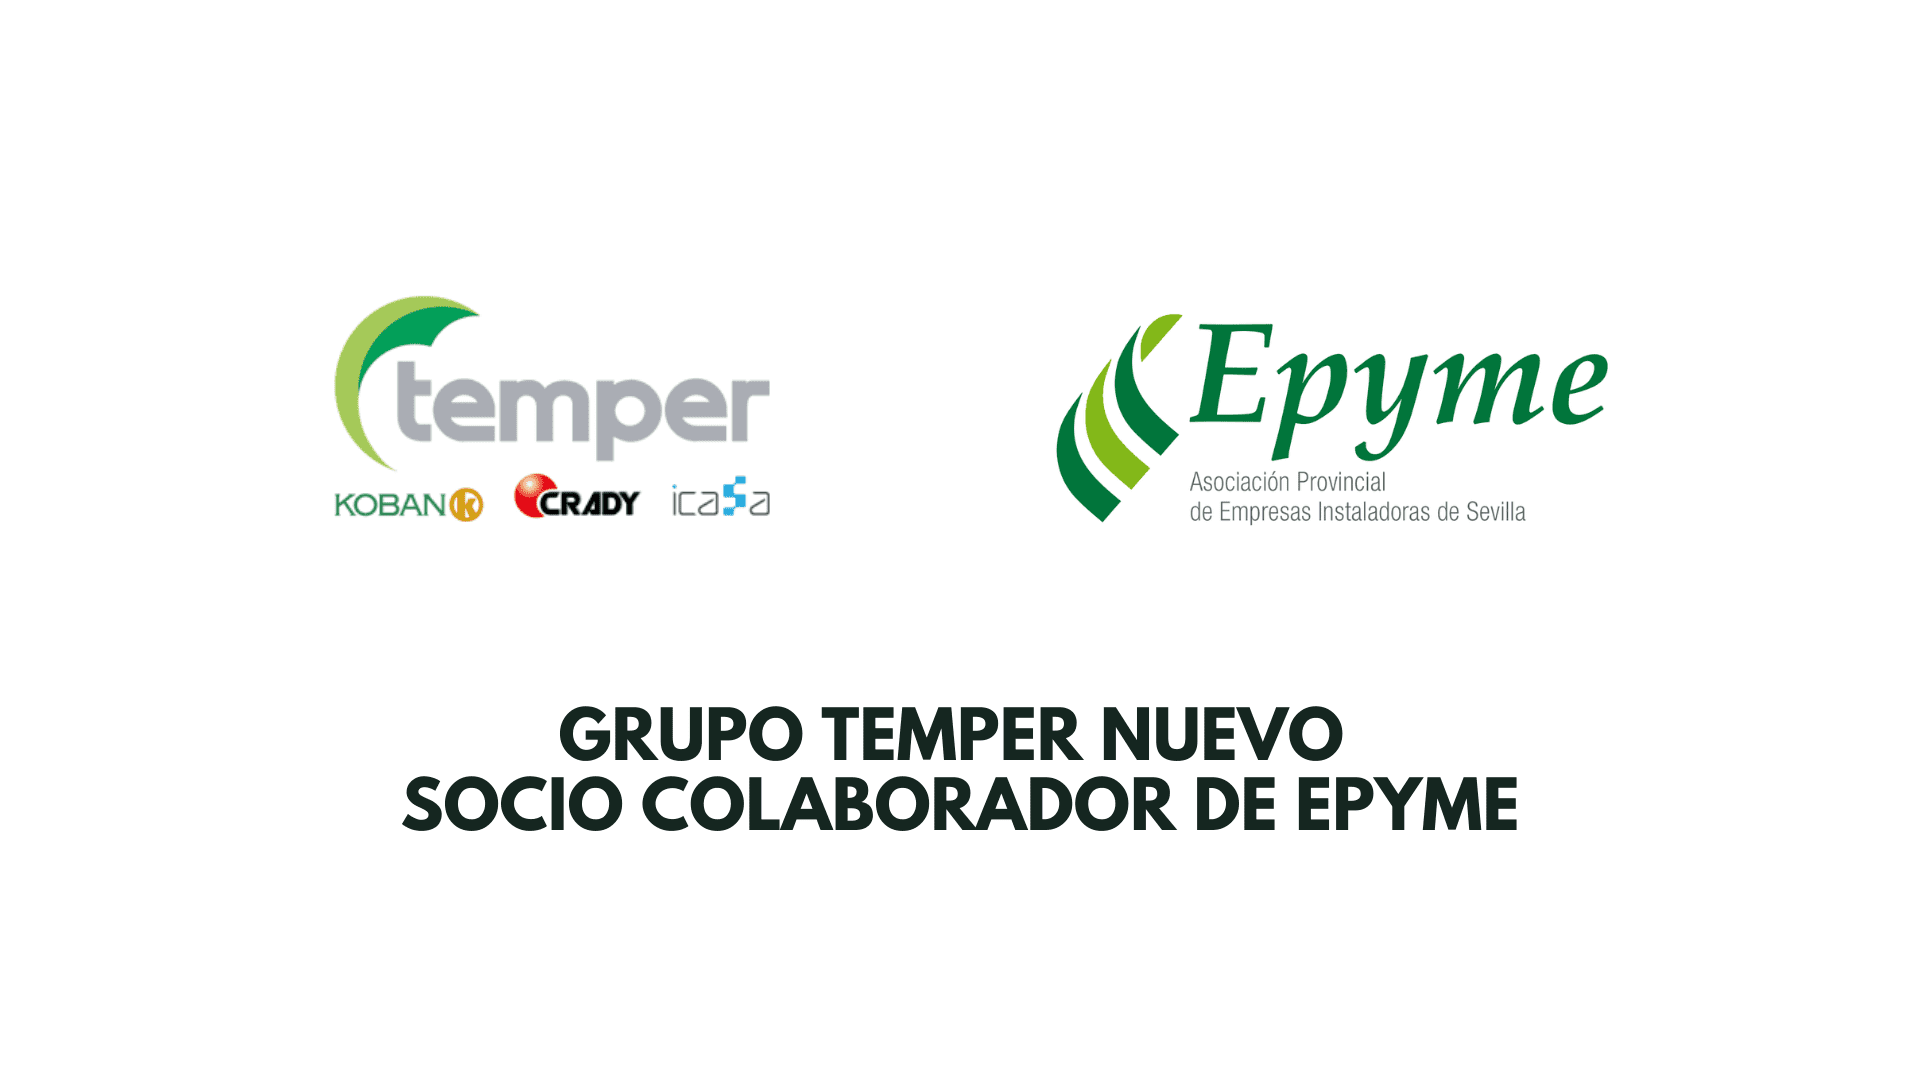 Grupo Temper abre una nueva etapa en Epyme como socio colaborador